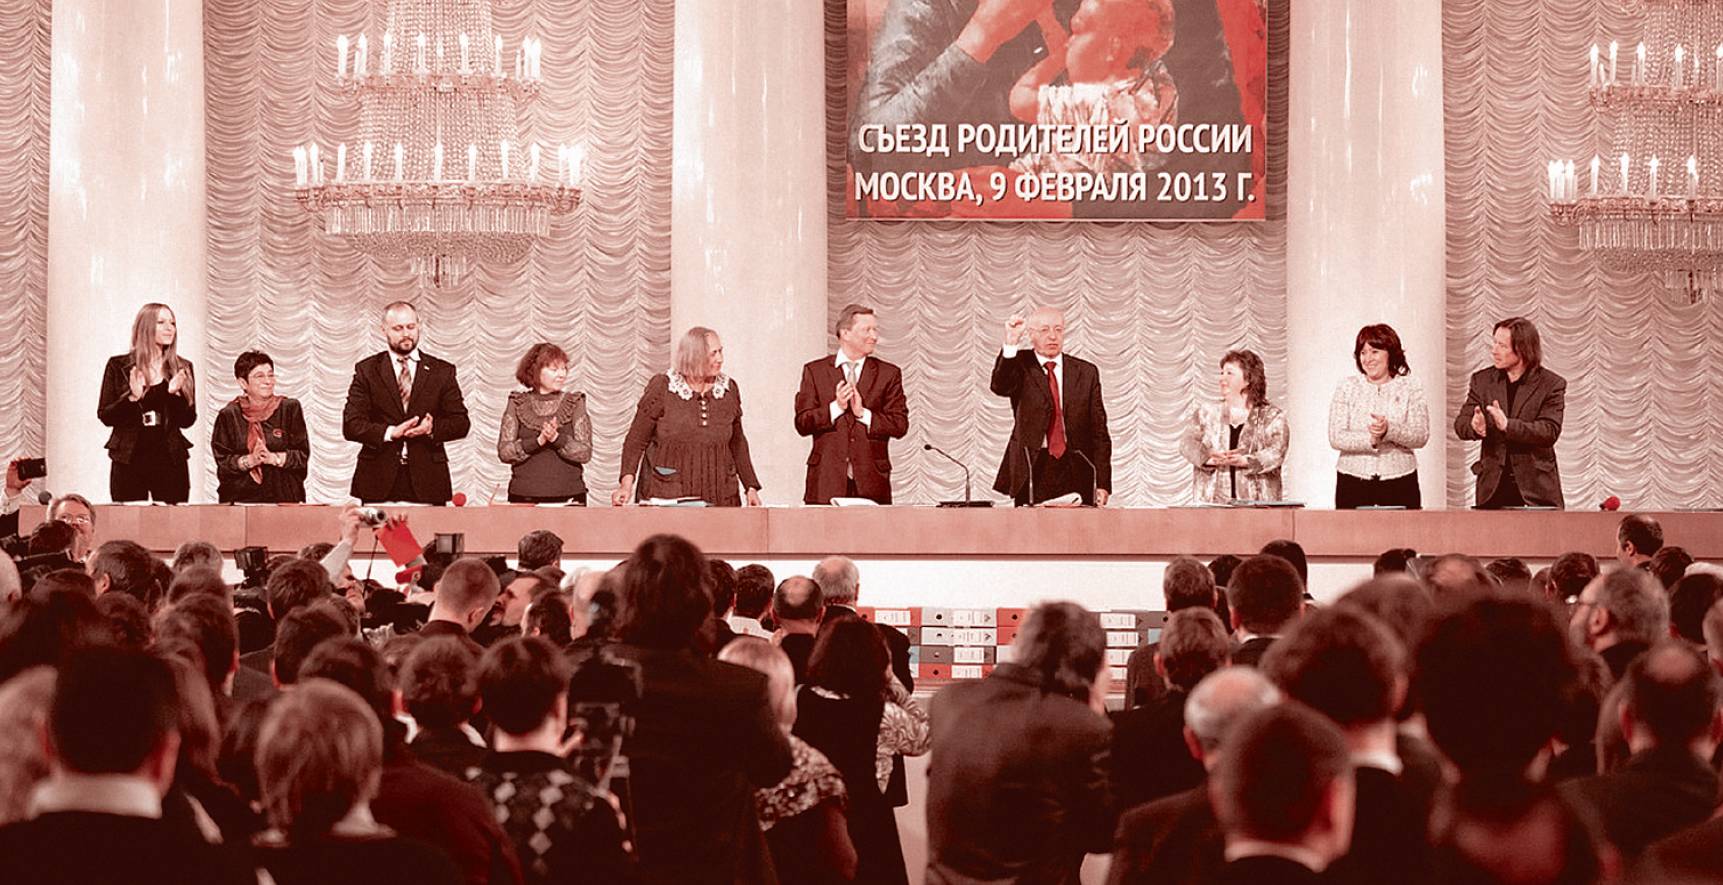 Учредительный съезд Родительского Всероссийского Сопротивления 9 февраля 2013 г.